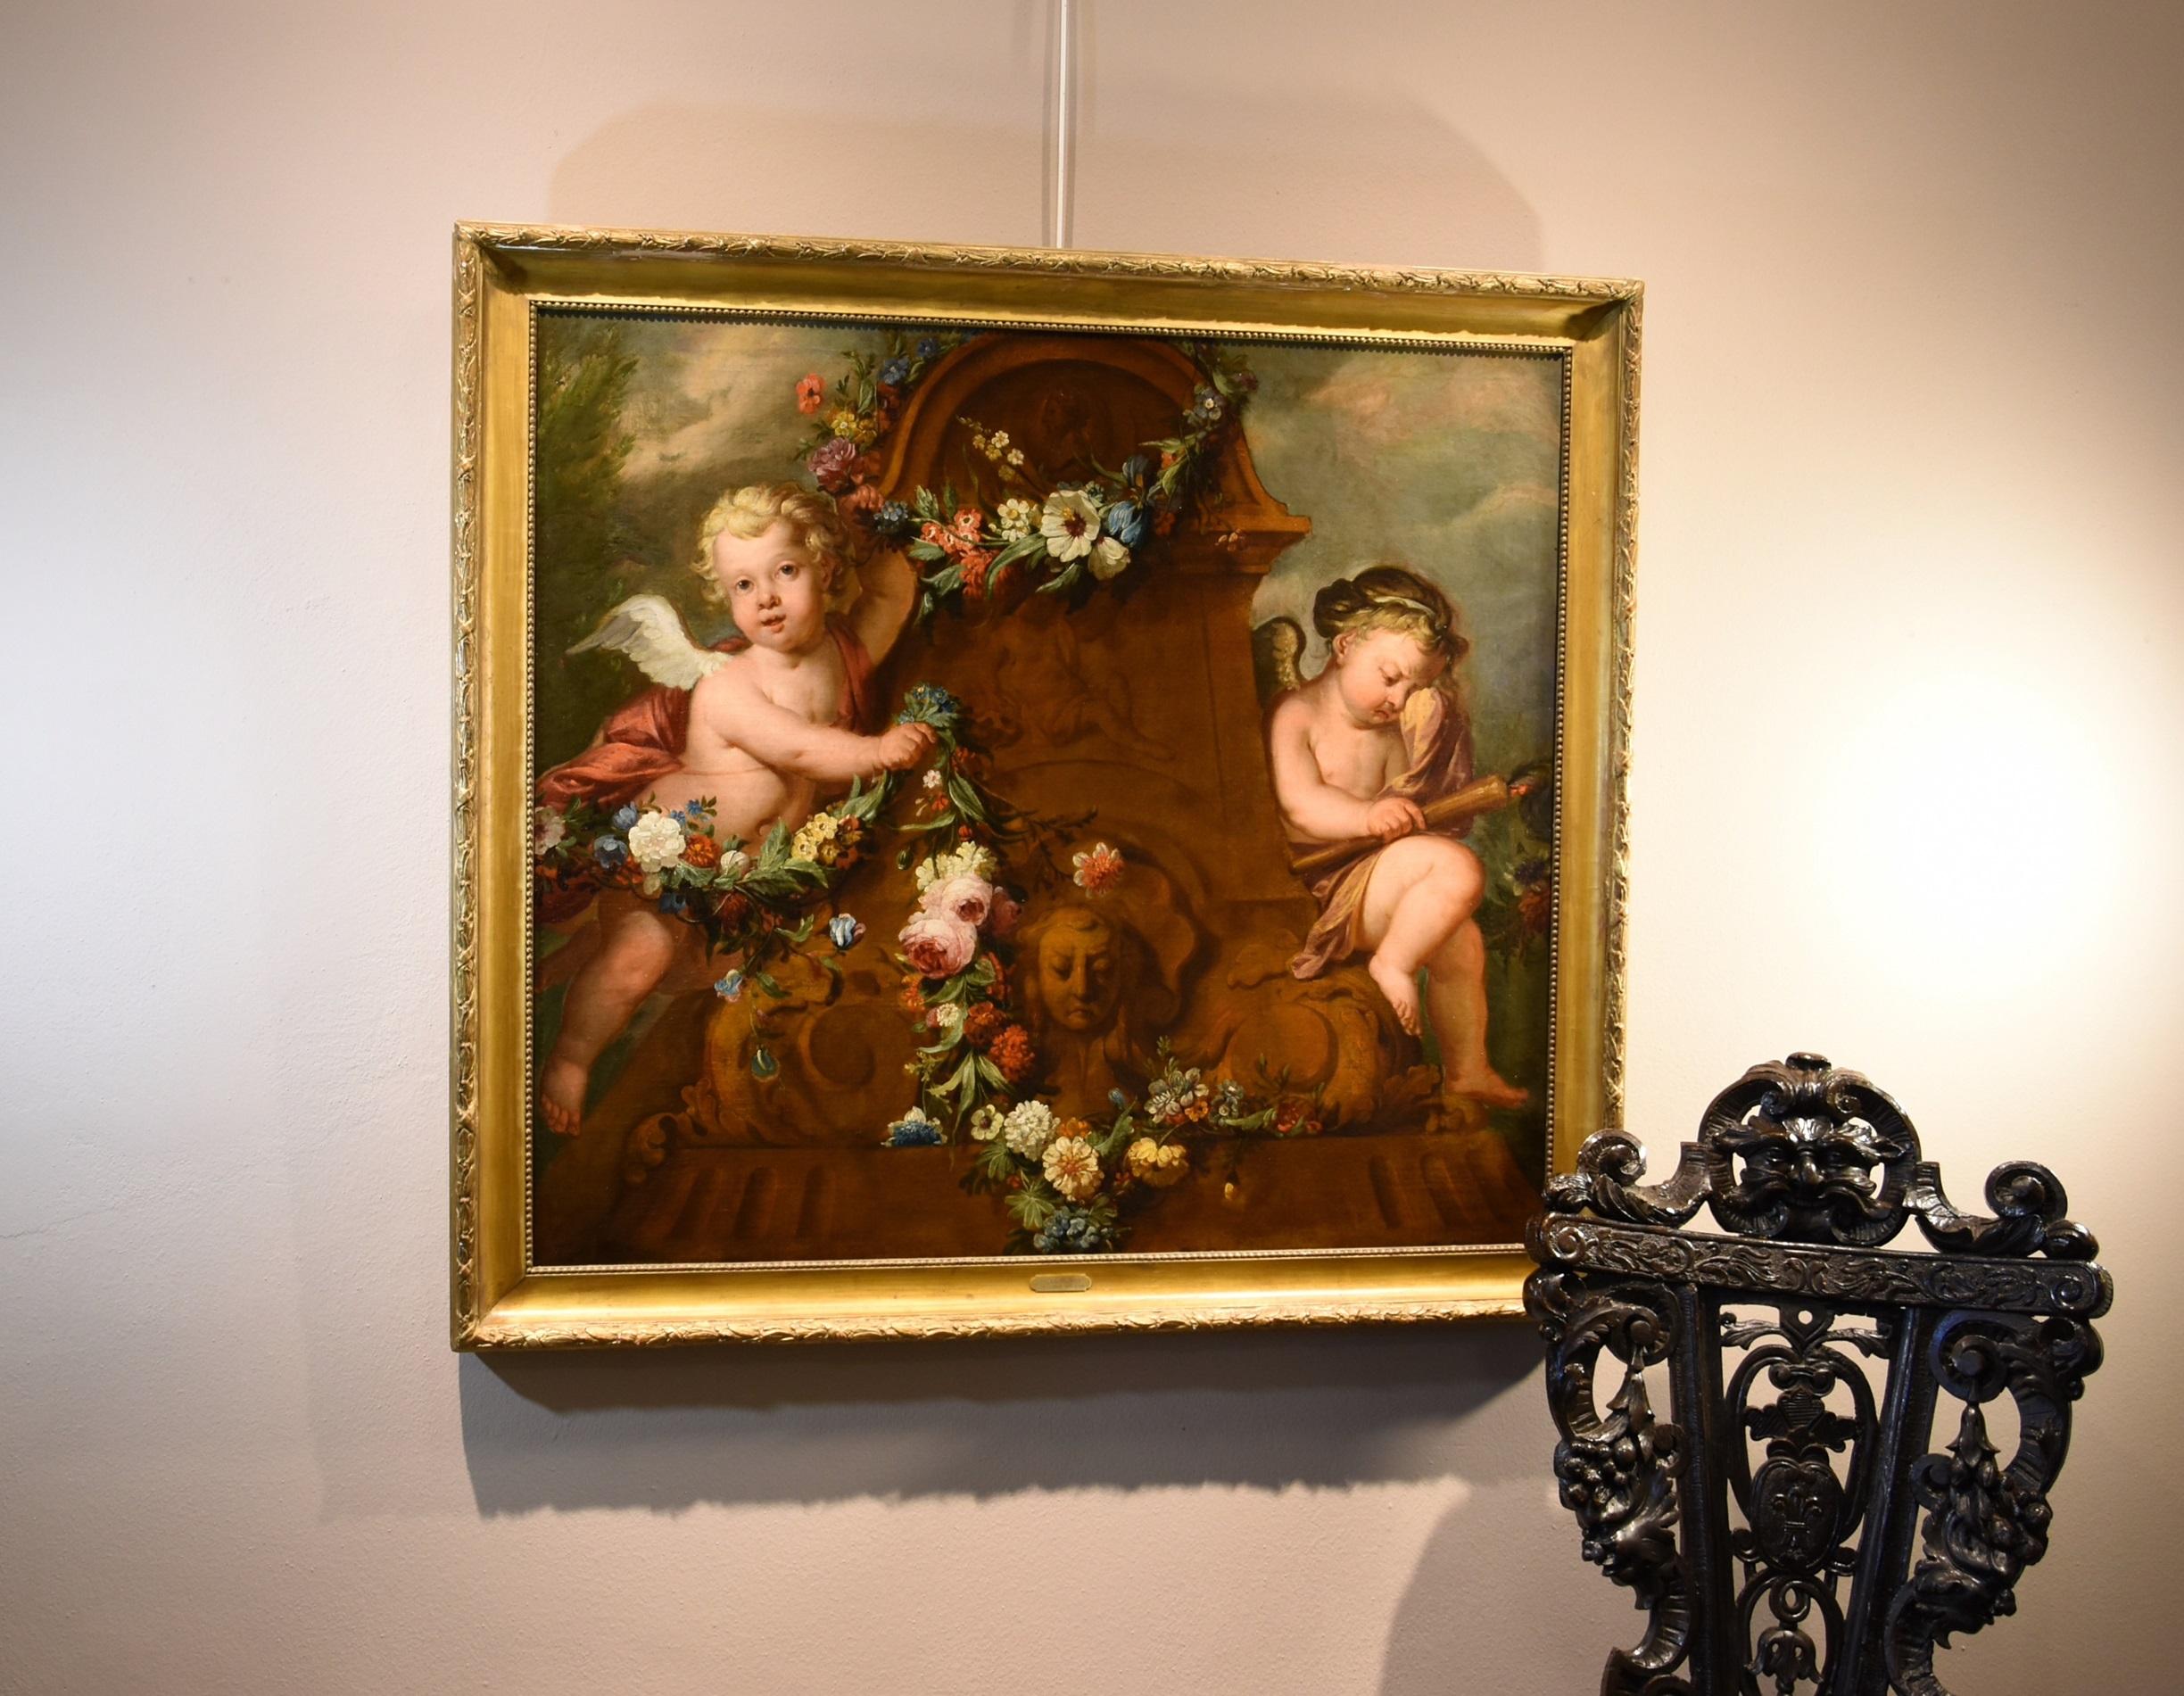 Jacob De Wit (Amsterdam, 1695 - 1754) attribuable/ atelier
Paire de Cupidons avec guirlande de fleurs

Huile sur toile
91 x 103 cm. - Encadré 104 x 115 cm.

Provenance : Christie's (Londres, Old master Painting 12.12.1996) lot 82

Cette magnifique